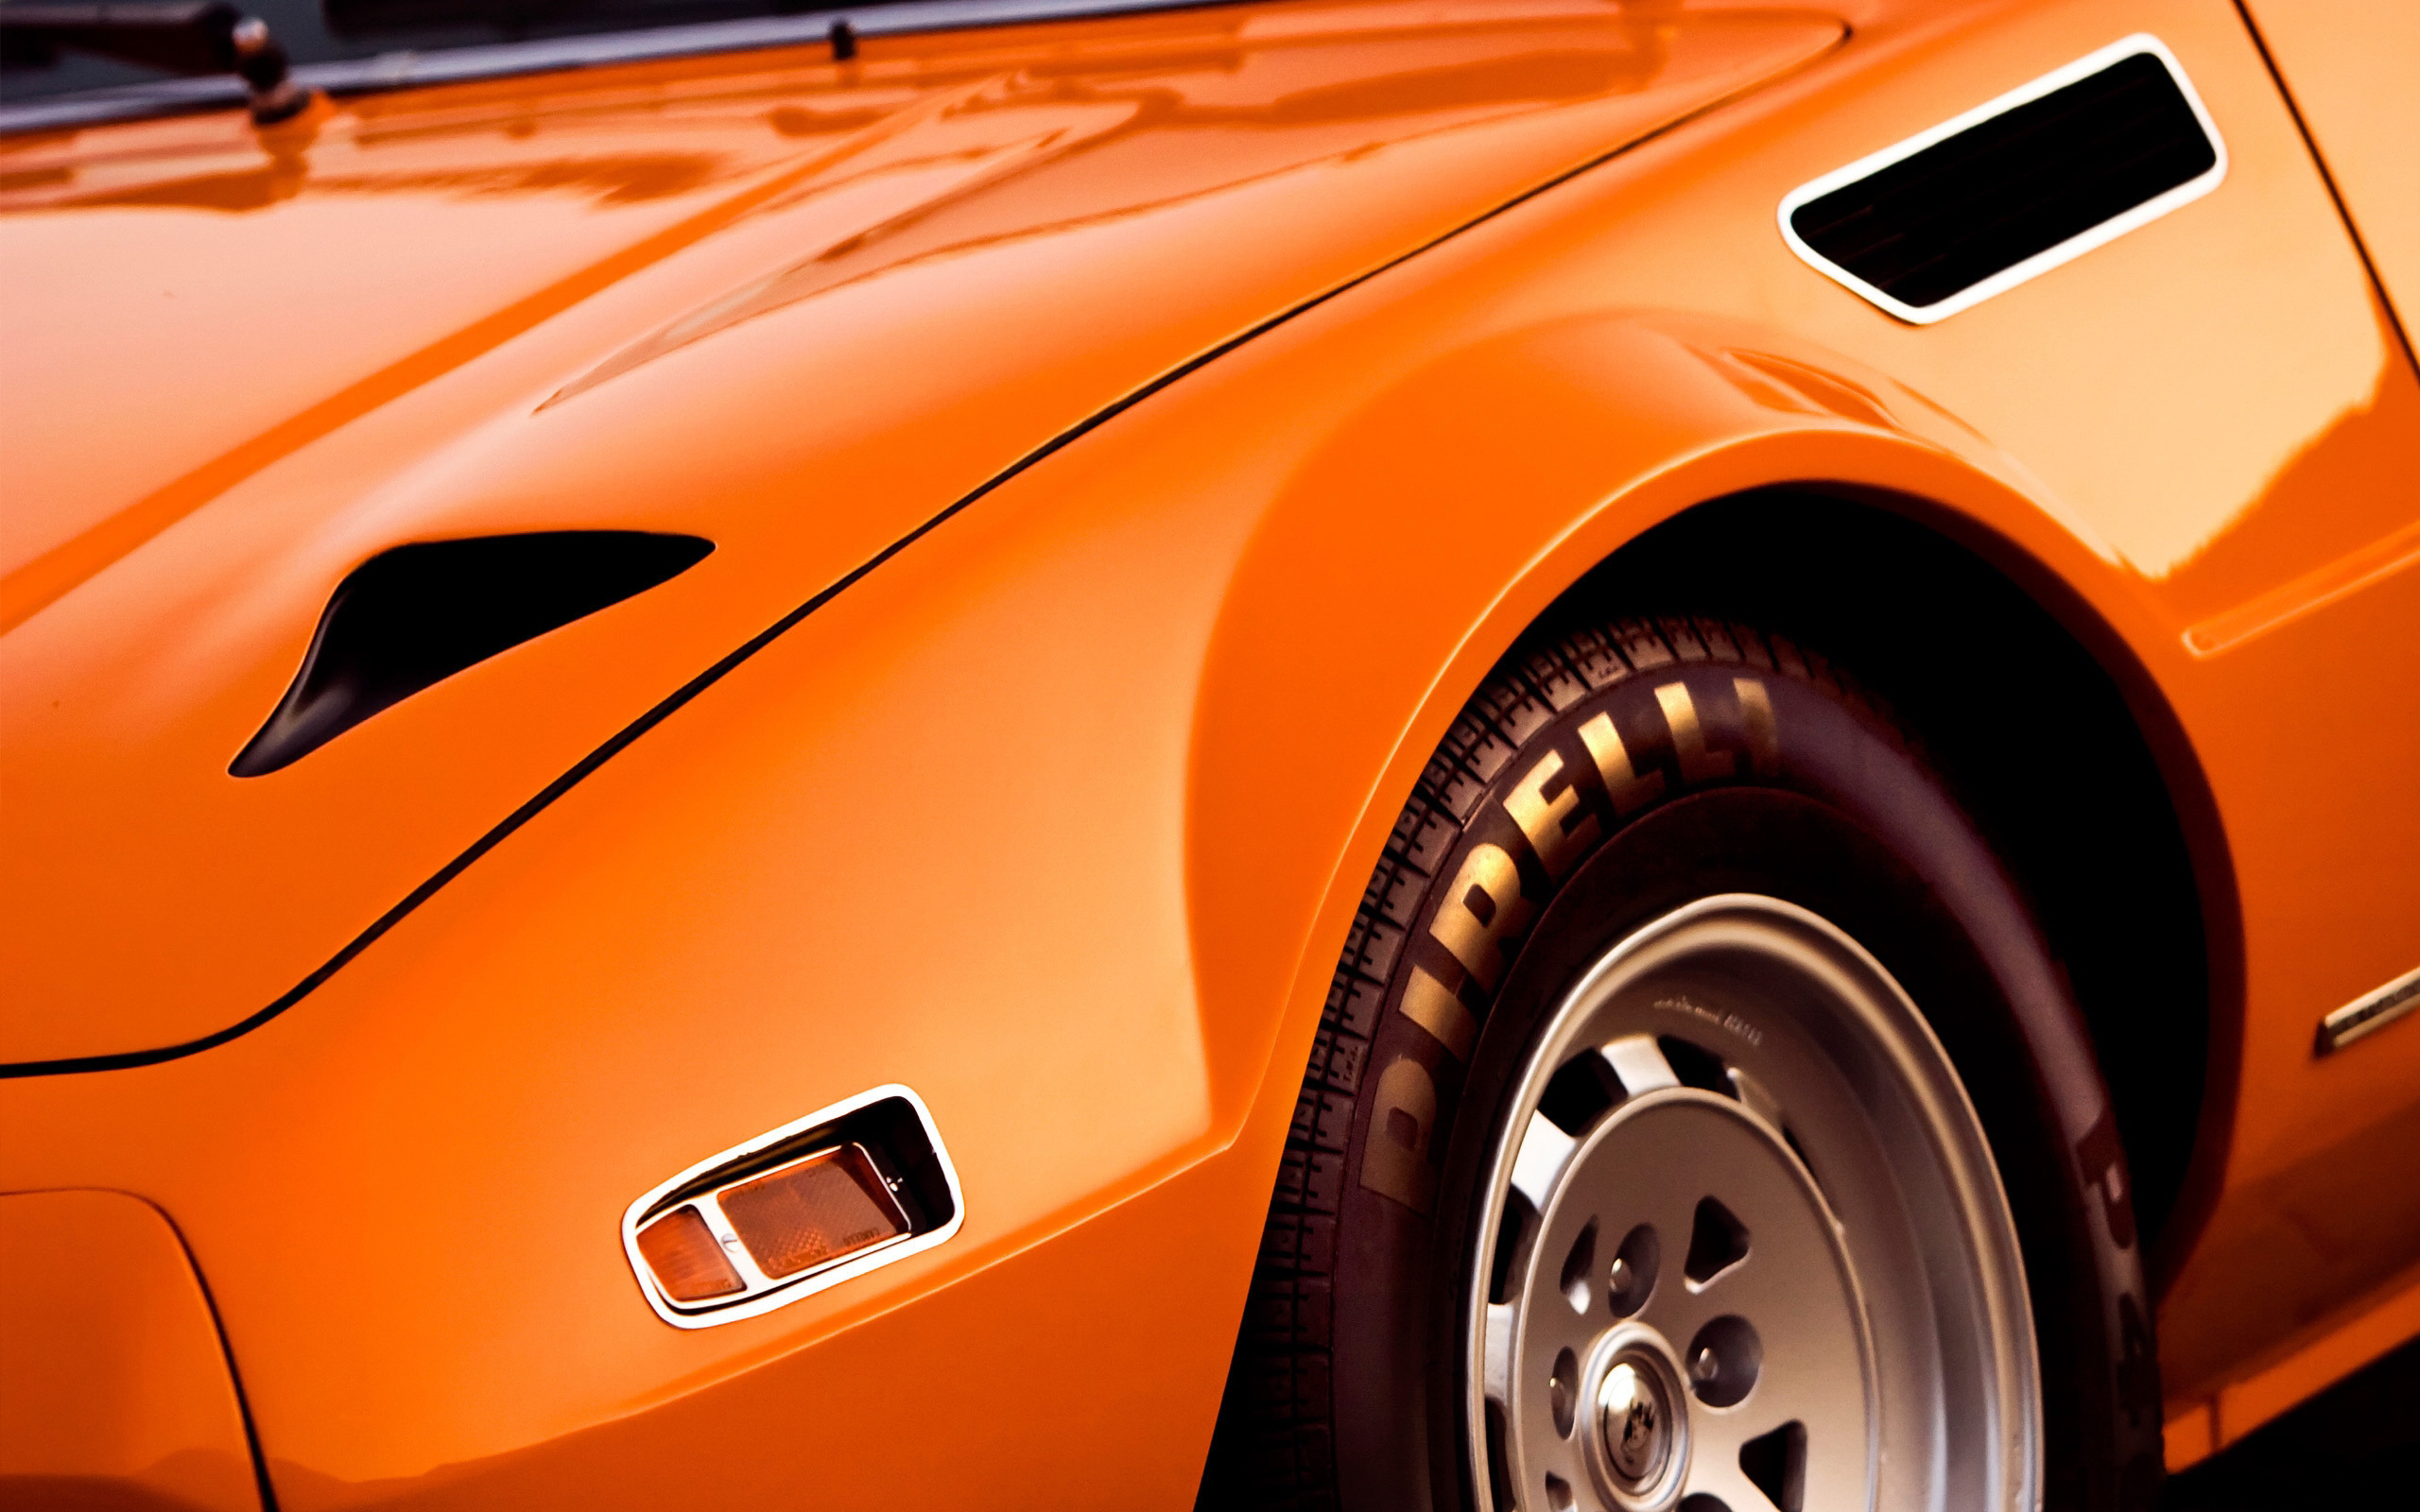 Видео машин цвета. Автомобиль оранжевый. Оранжевый цвет машины. Оранжевая машинка. Красивая оранжевая машина.